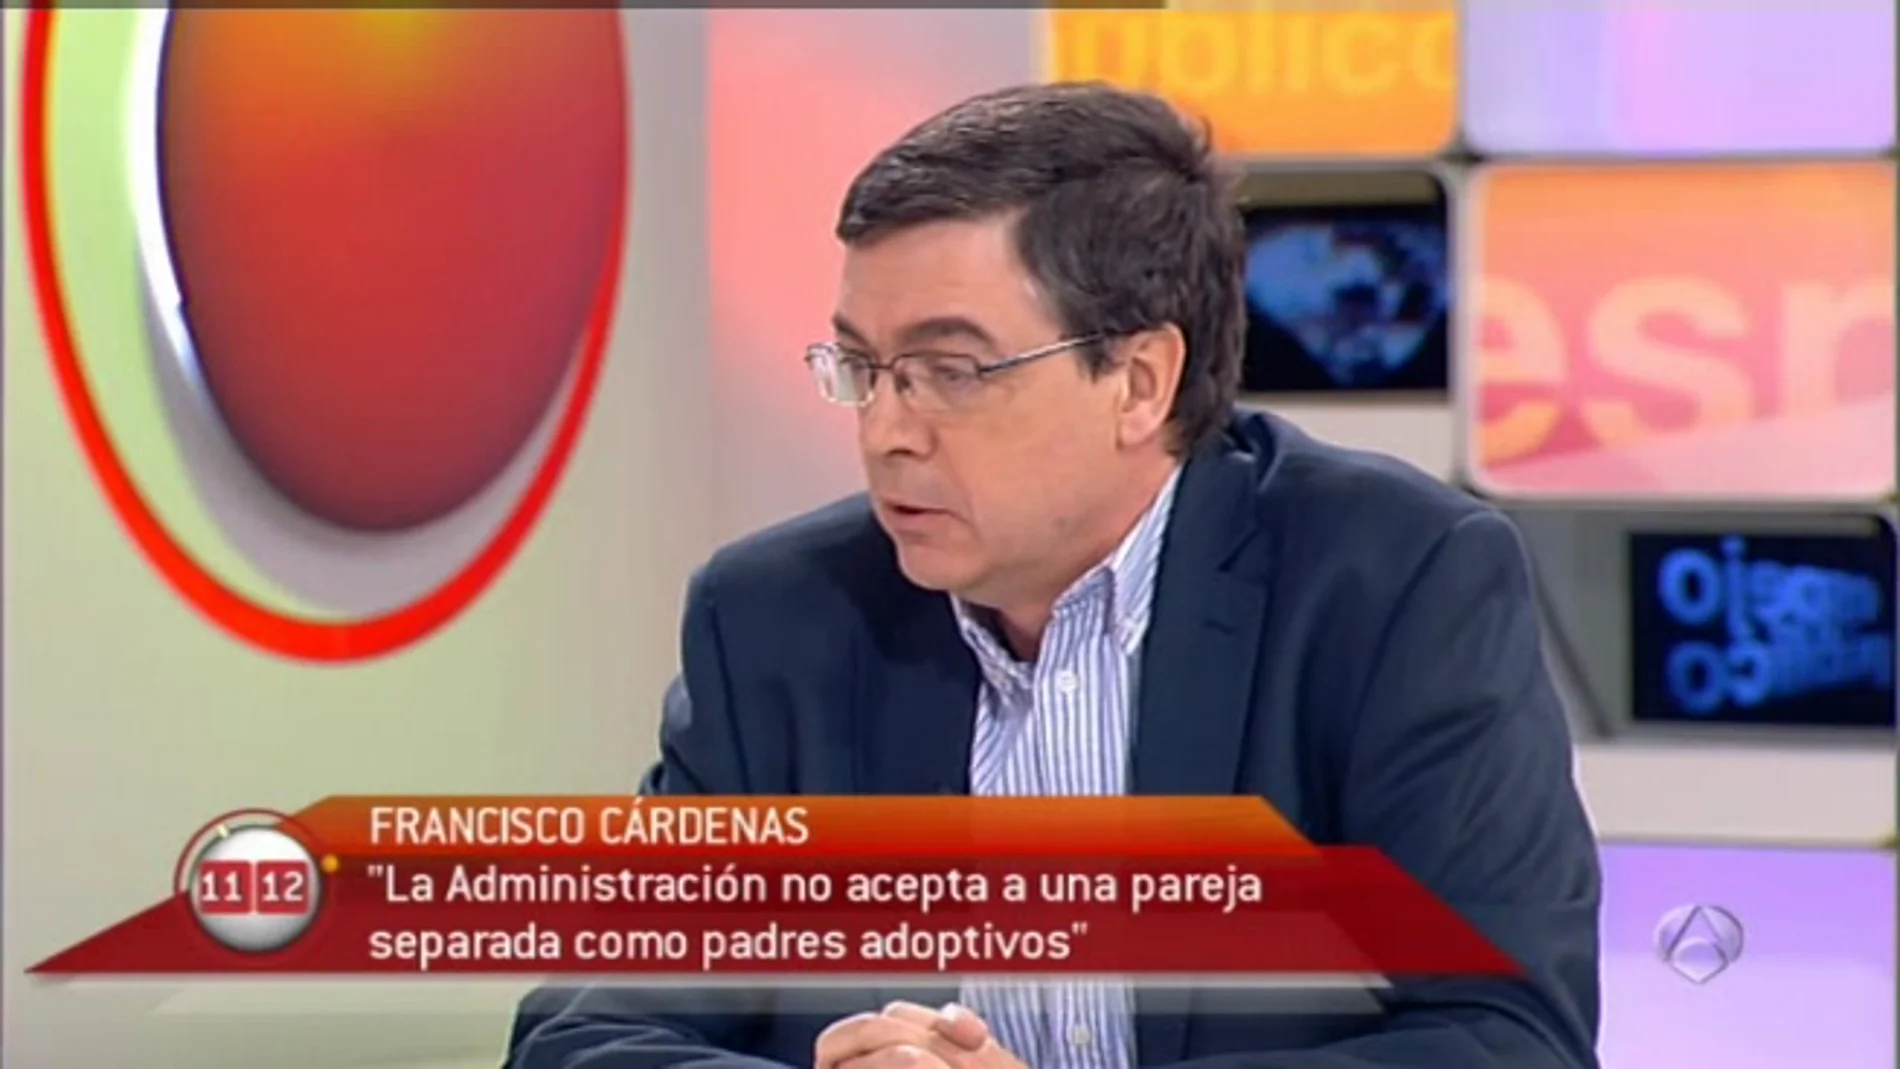 Francisco Cárdenas